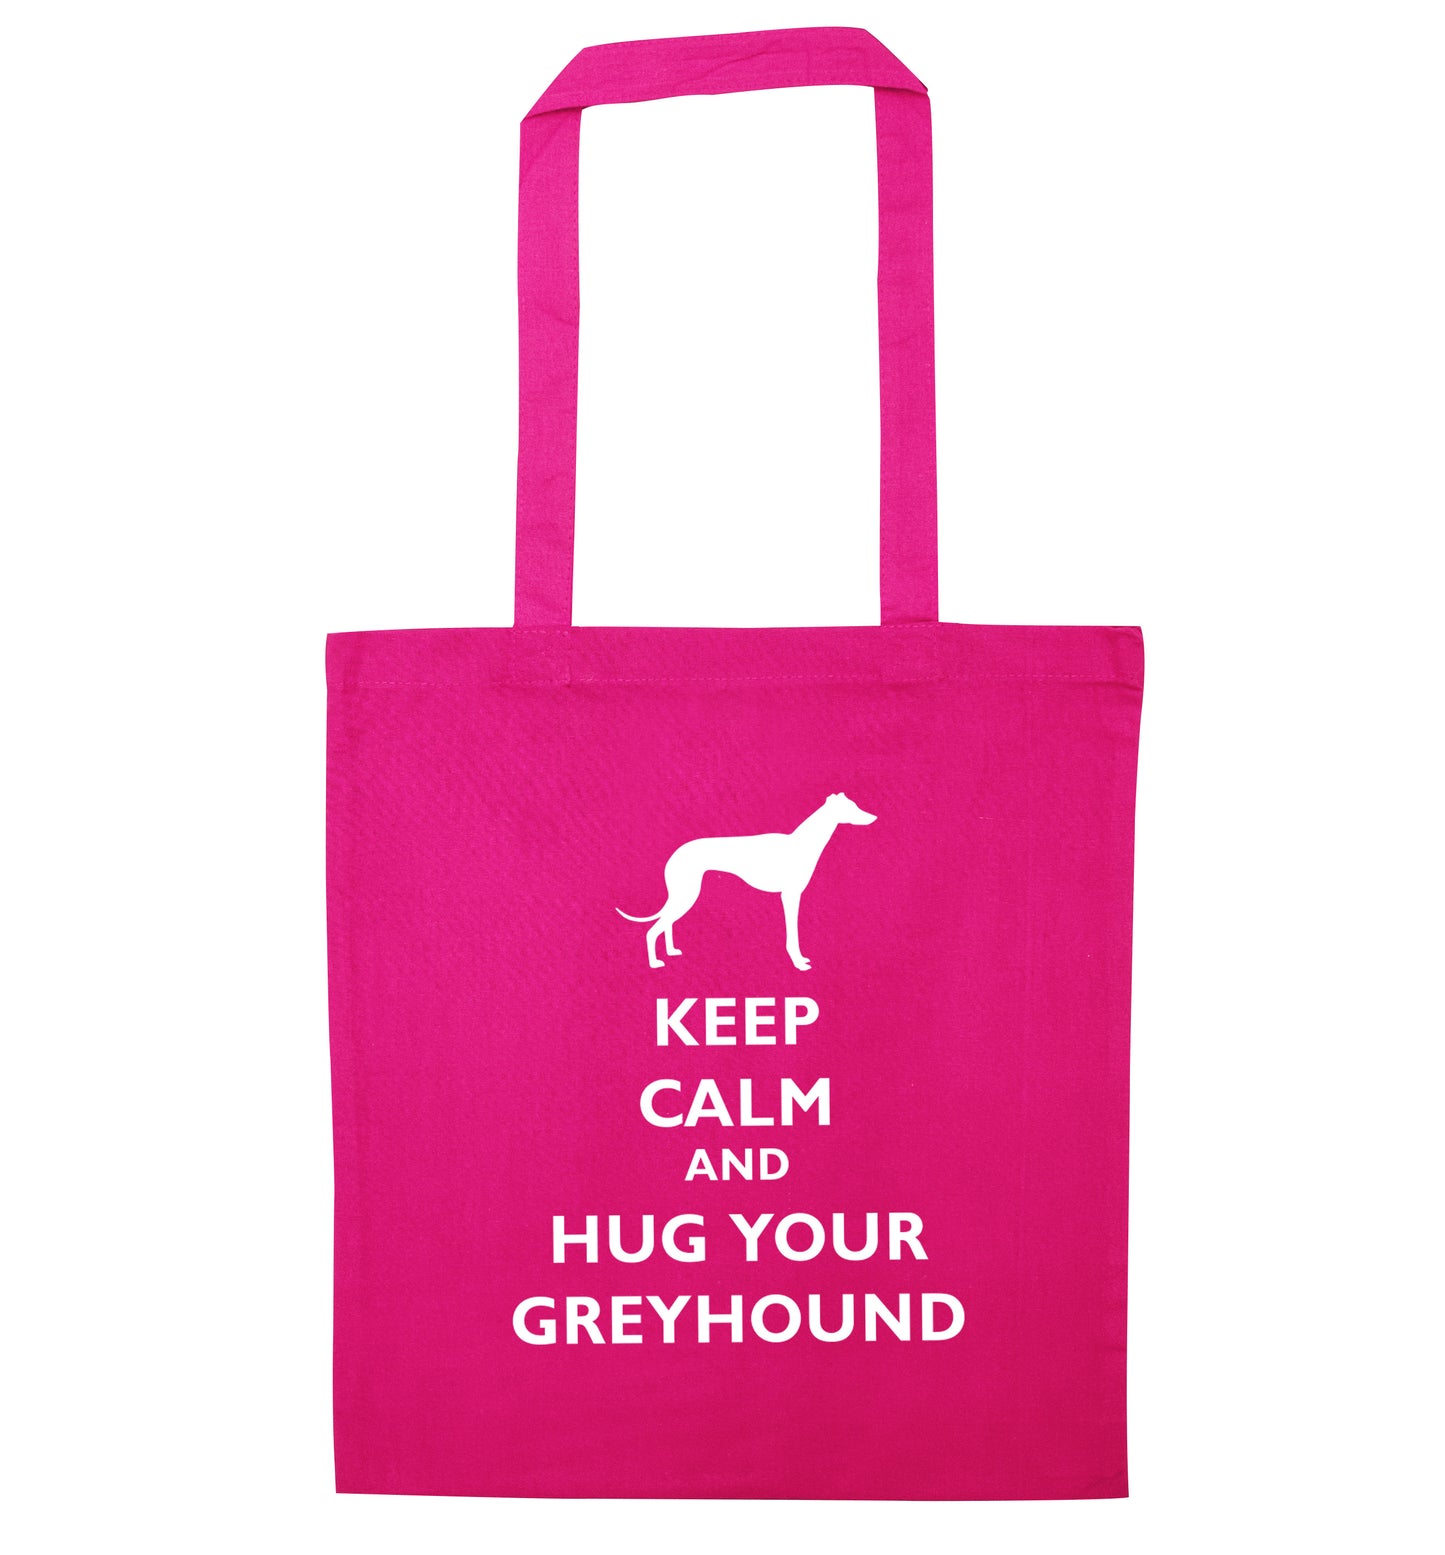 Keep calm and hug your greyhound pink tote bag